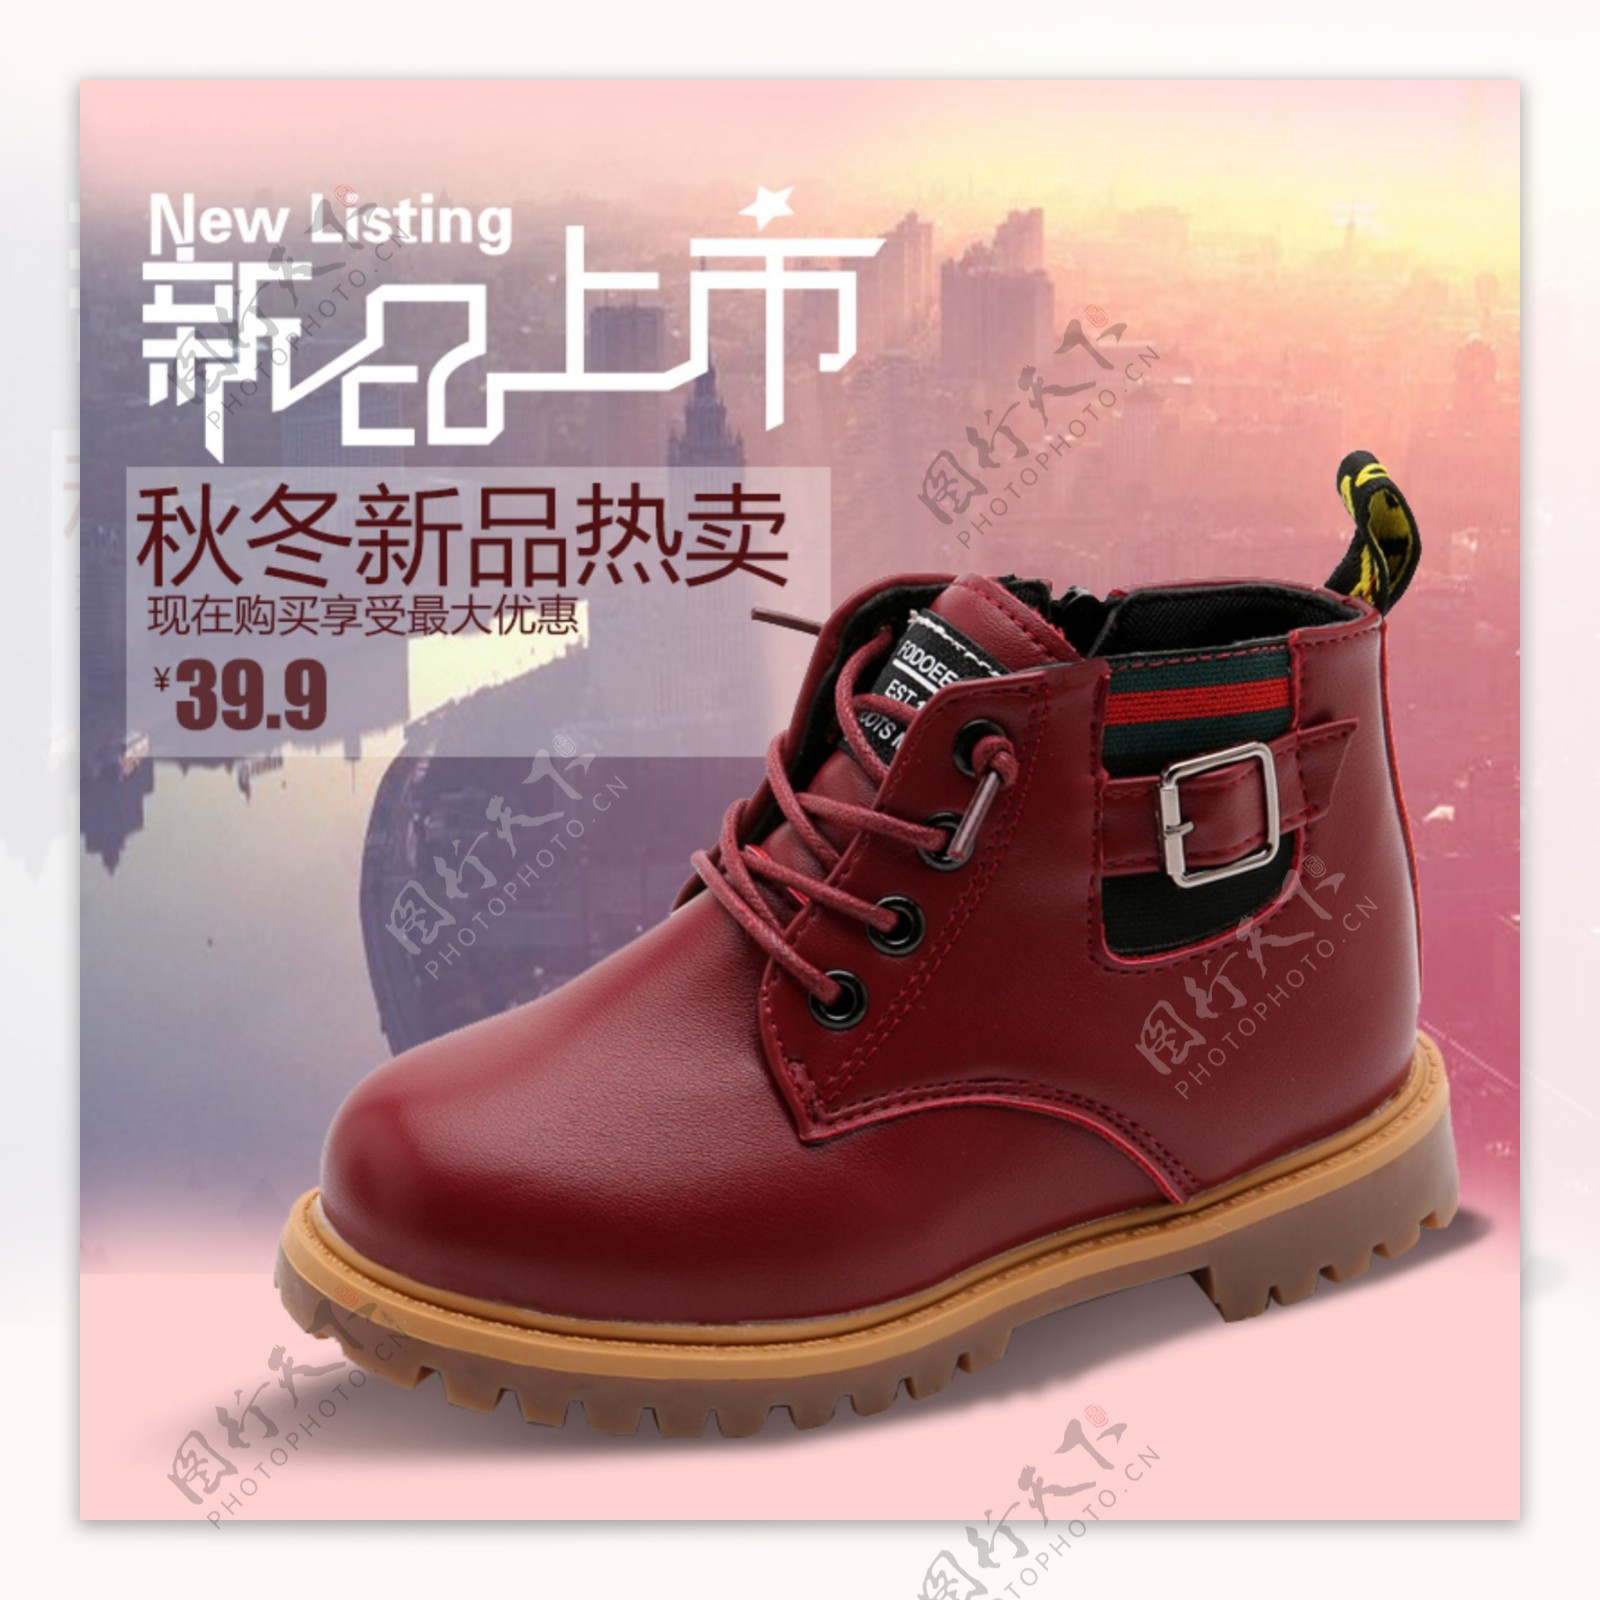 新品上市红色马丁靴促销直通车主图淘宝电商主图